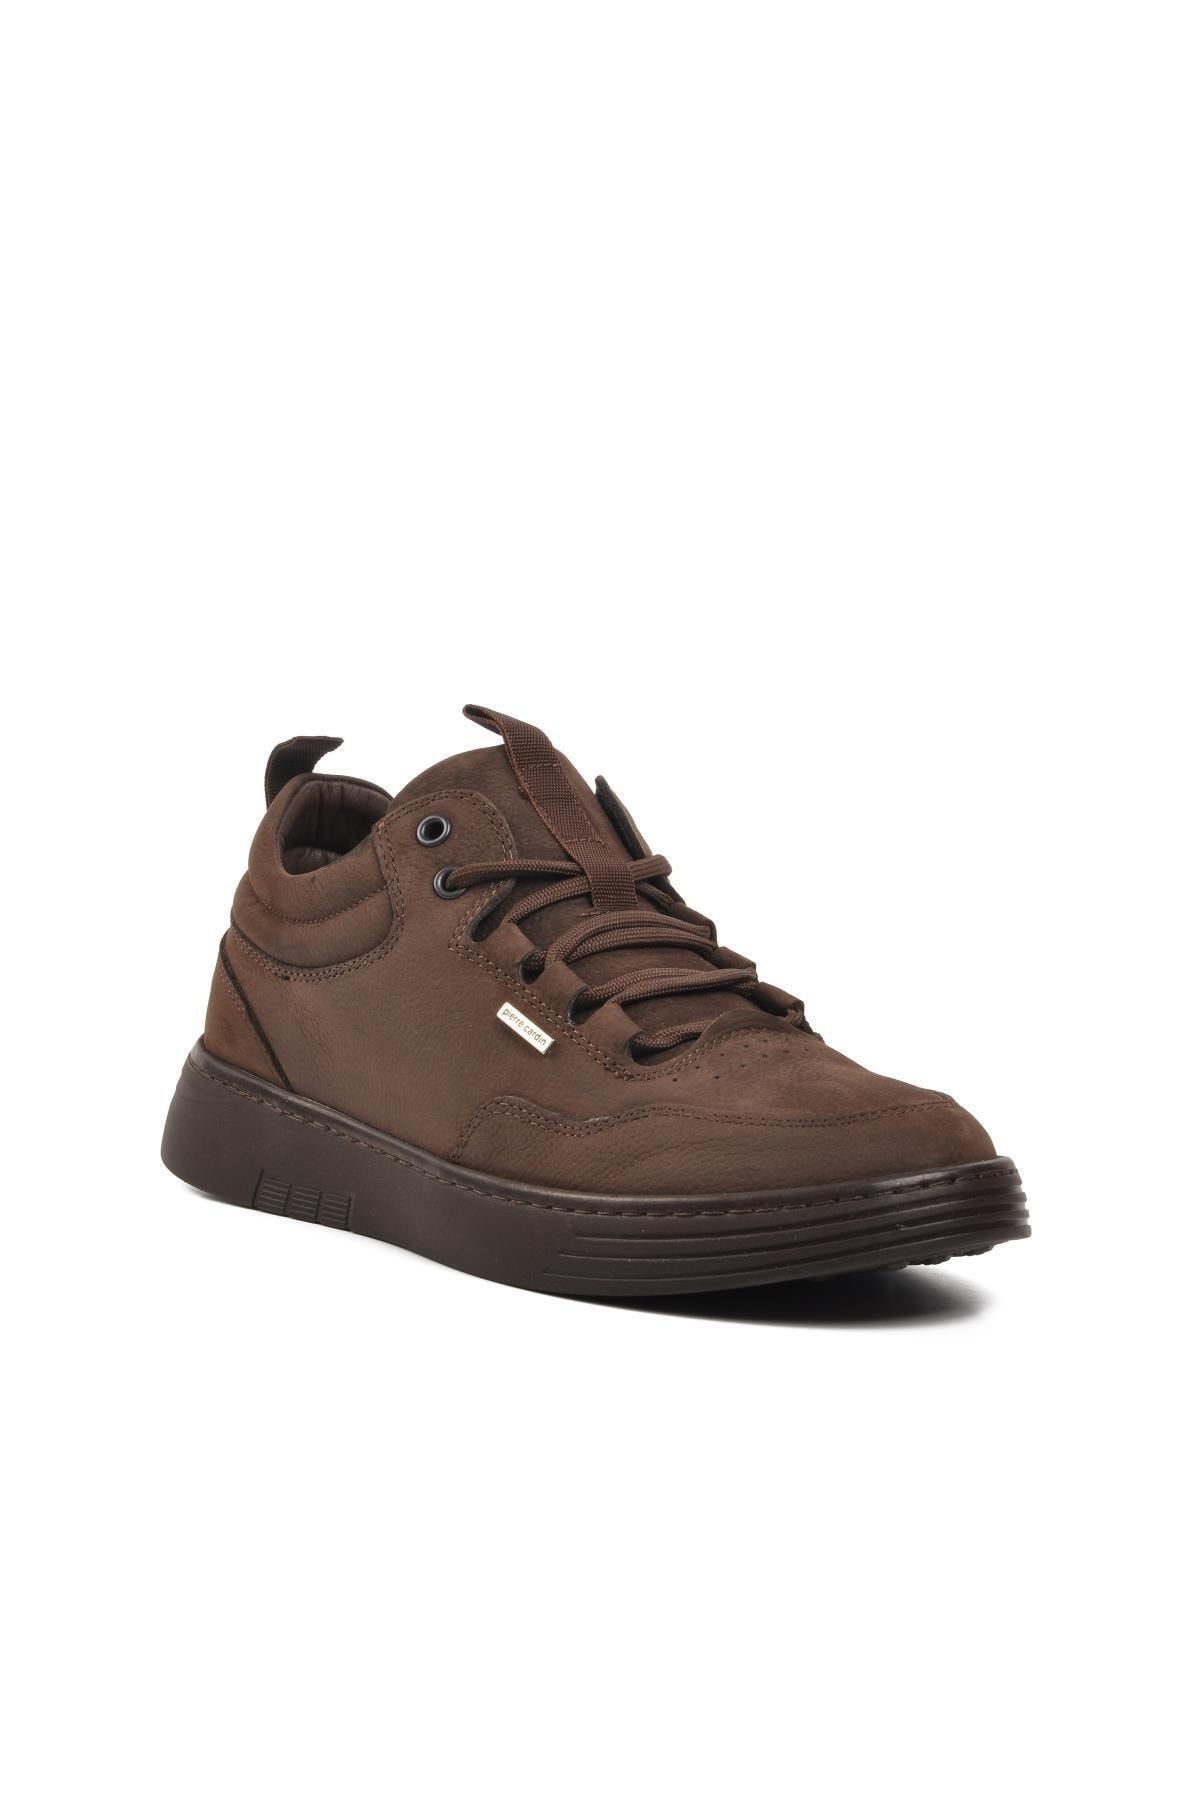 Pierre Cardin 779616 Kahverengi Nubuk Hakiki Deri Erkek Günlük Ayakkabı